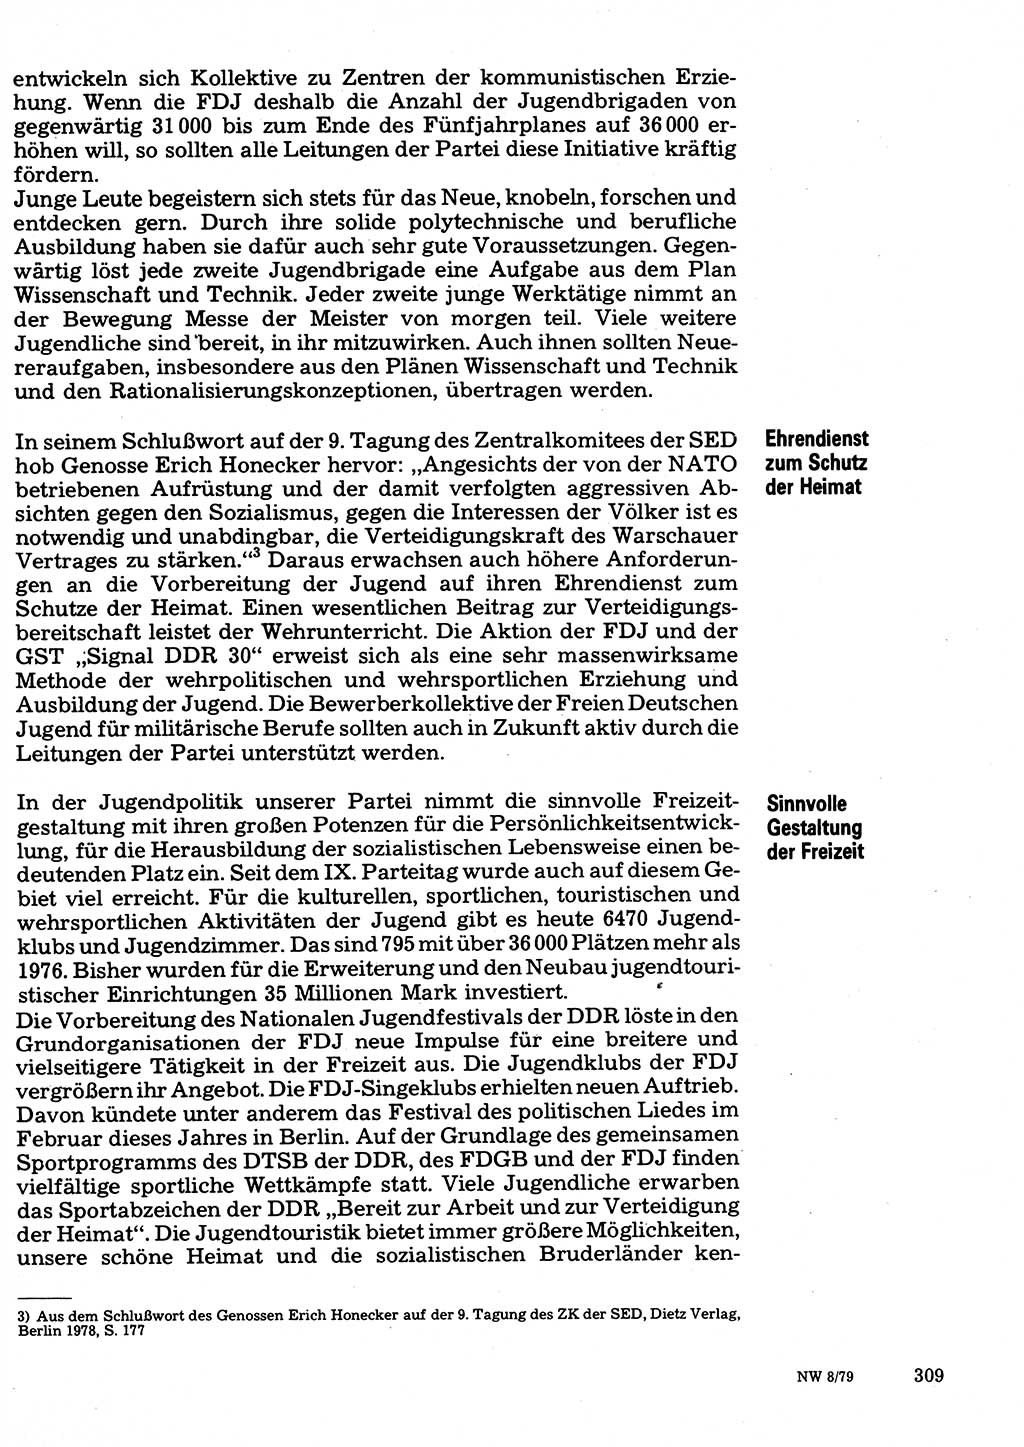 Neuer Weg (NW), Organ des Zentralkomitees (ZK) der SED (Sozialistische Einheitspartei Deutschlands) für Fragen des Parteilebens, 34. Jahrgang [Deutsche Demokratische Republik (DDR)] 1979, Seite 309 (NW ZK SED DDR 1979, S. 309)